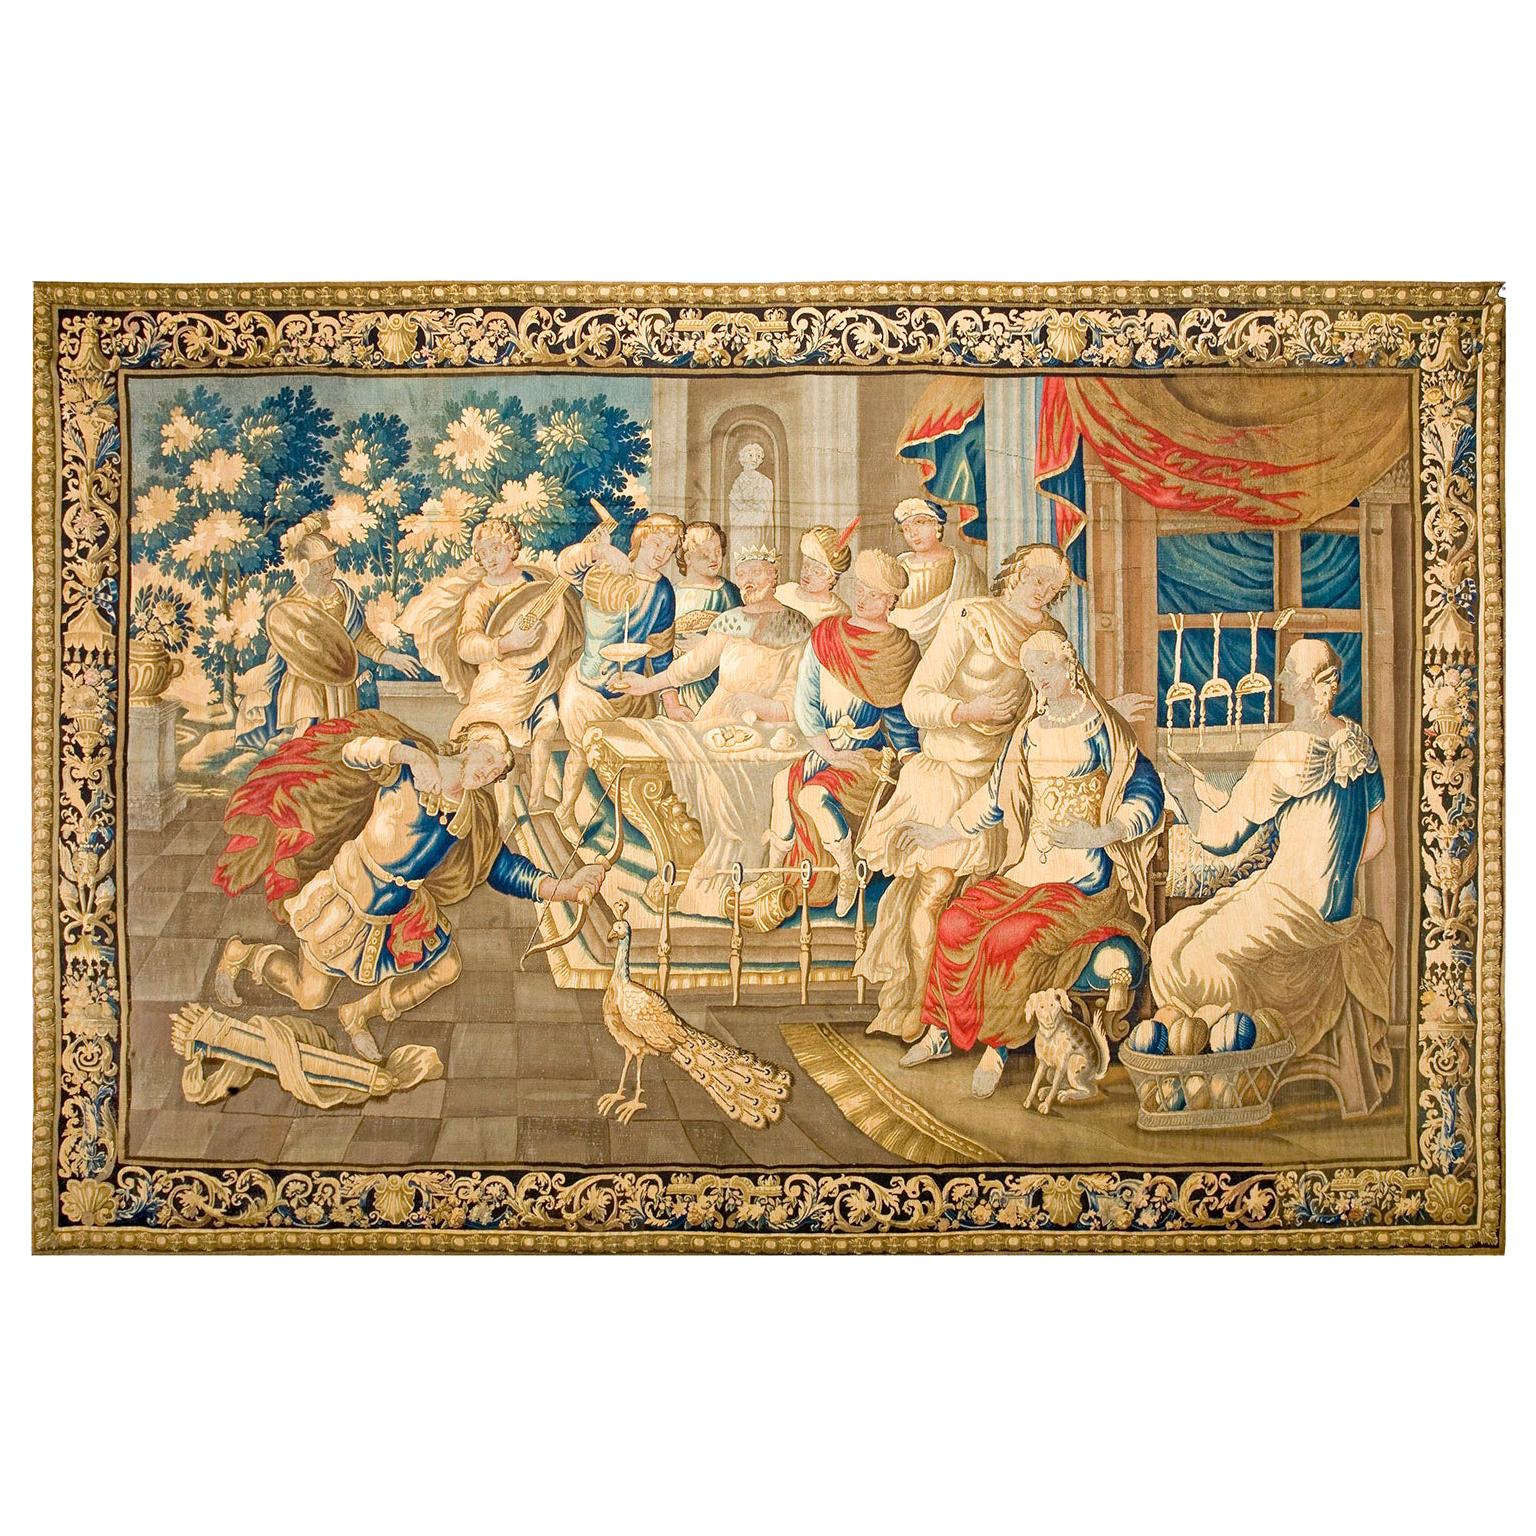 Brüsseler Wandteppich aus der Mitte des 17. Jahrhunderts ( 10'6" x 15'6" - 320 x 472)